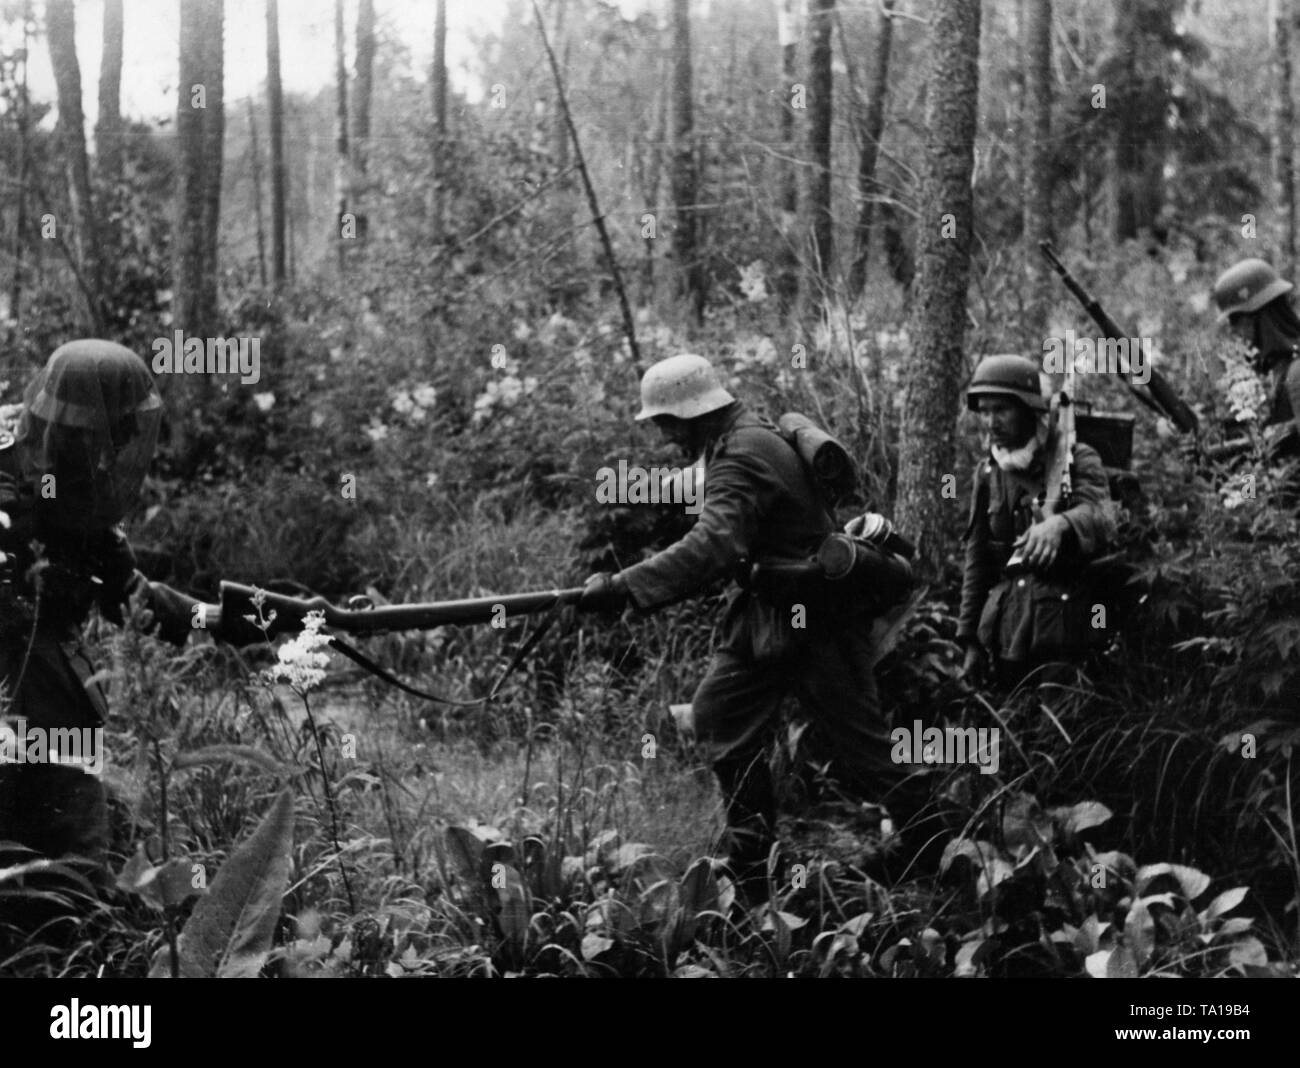 Deutsche Infanterie kreuzt ein Sumpfgebiet östlich von Kowel. Der Soldat auf der linken Seite trägt ein Moskitonetz über seinen Helm. Stockfoto